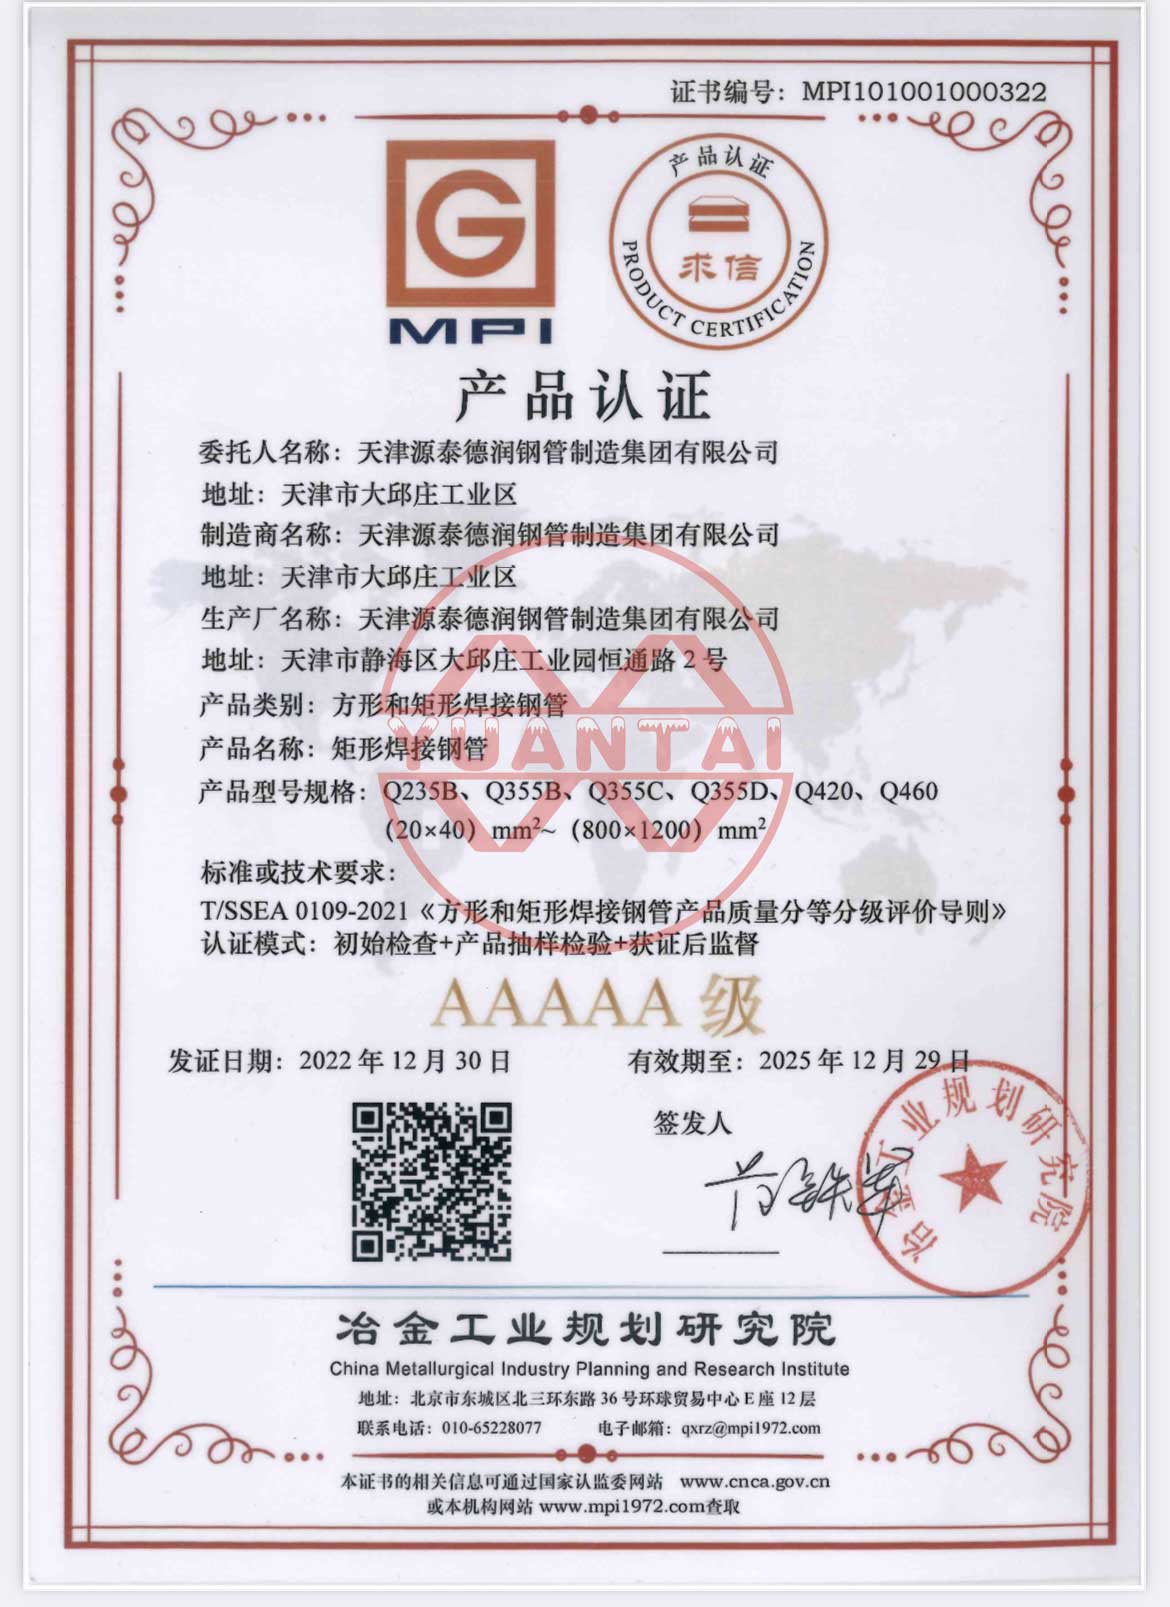 Tianjin Yuantai Derun Groupin neliömäiset ja suorakaiteen muotoiset hitsatut teräsputket saivat Metallurgical Industry Planning -instituutin AAAAA-tuotesertifikaatin